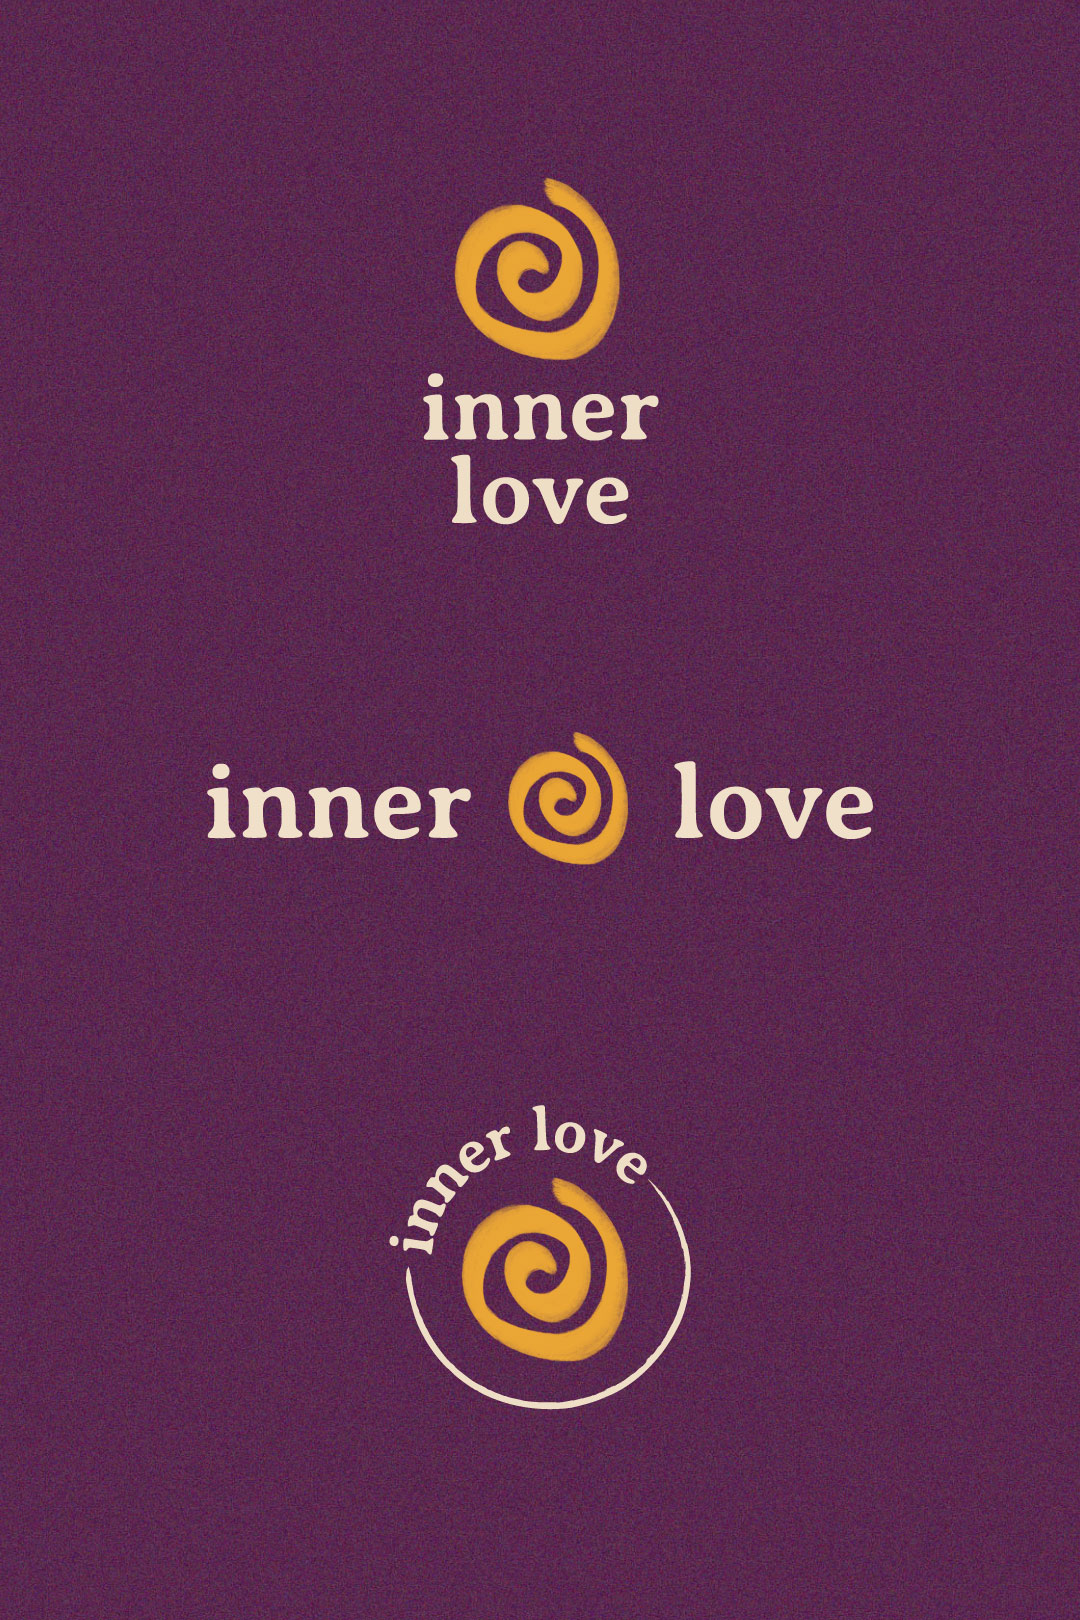 inner-love-logo